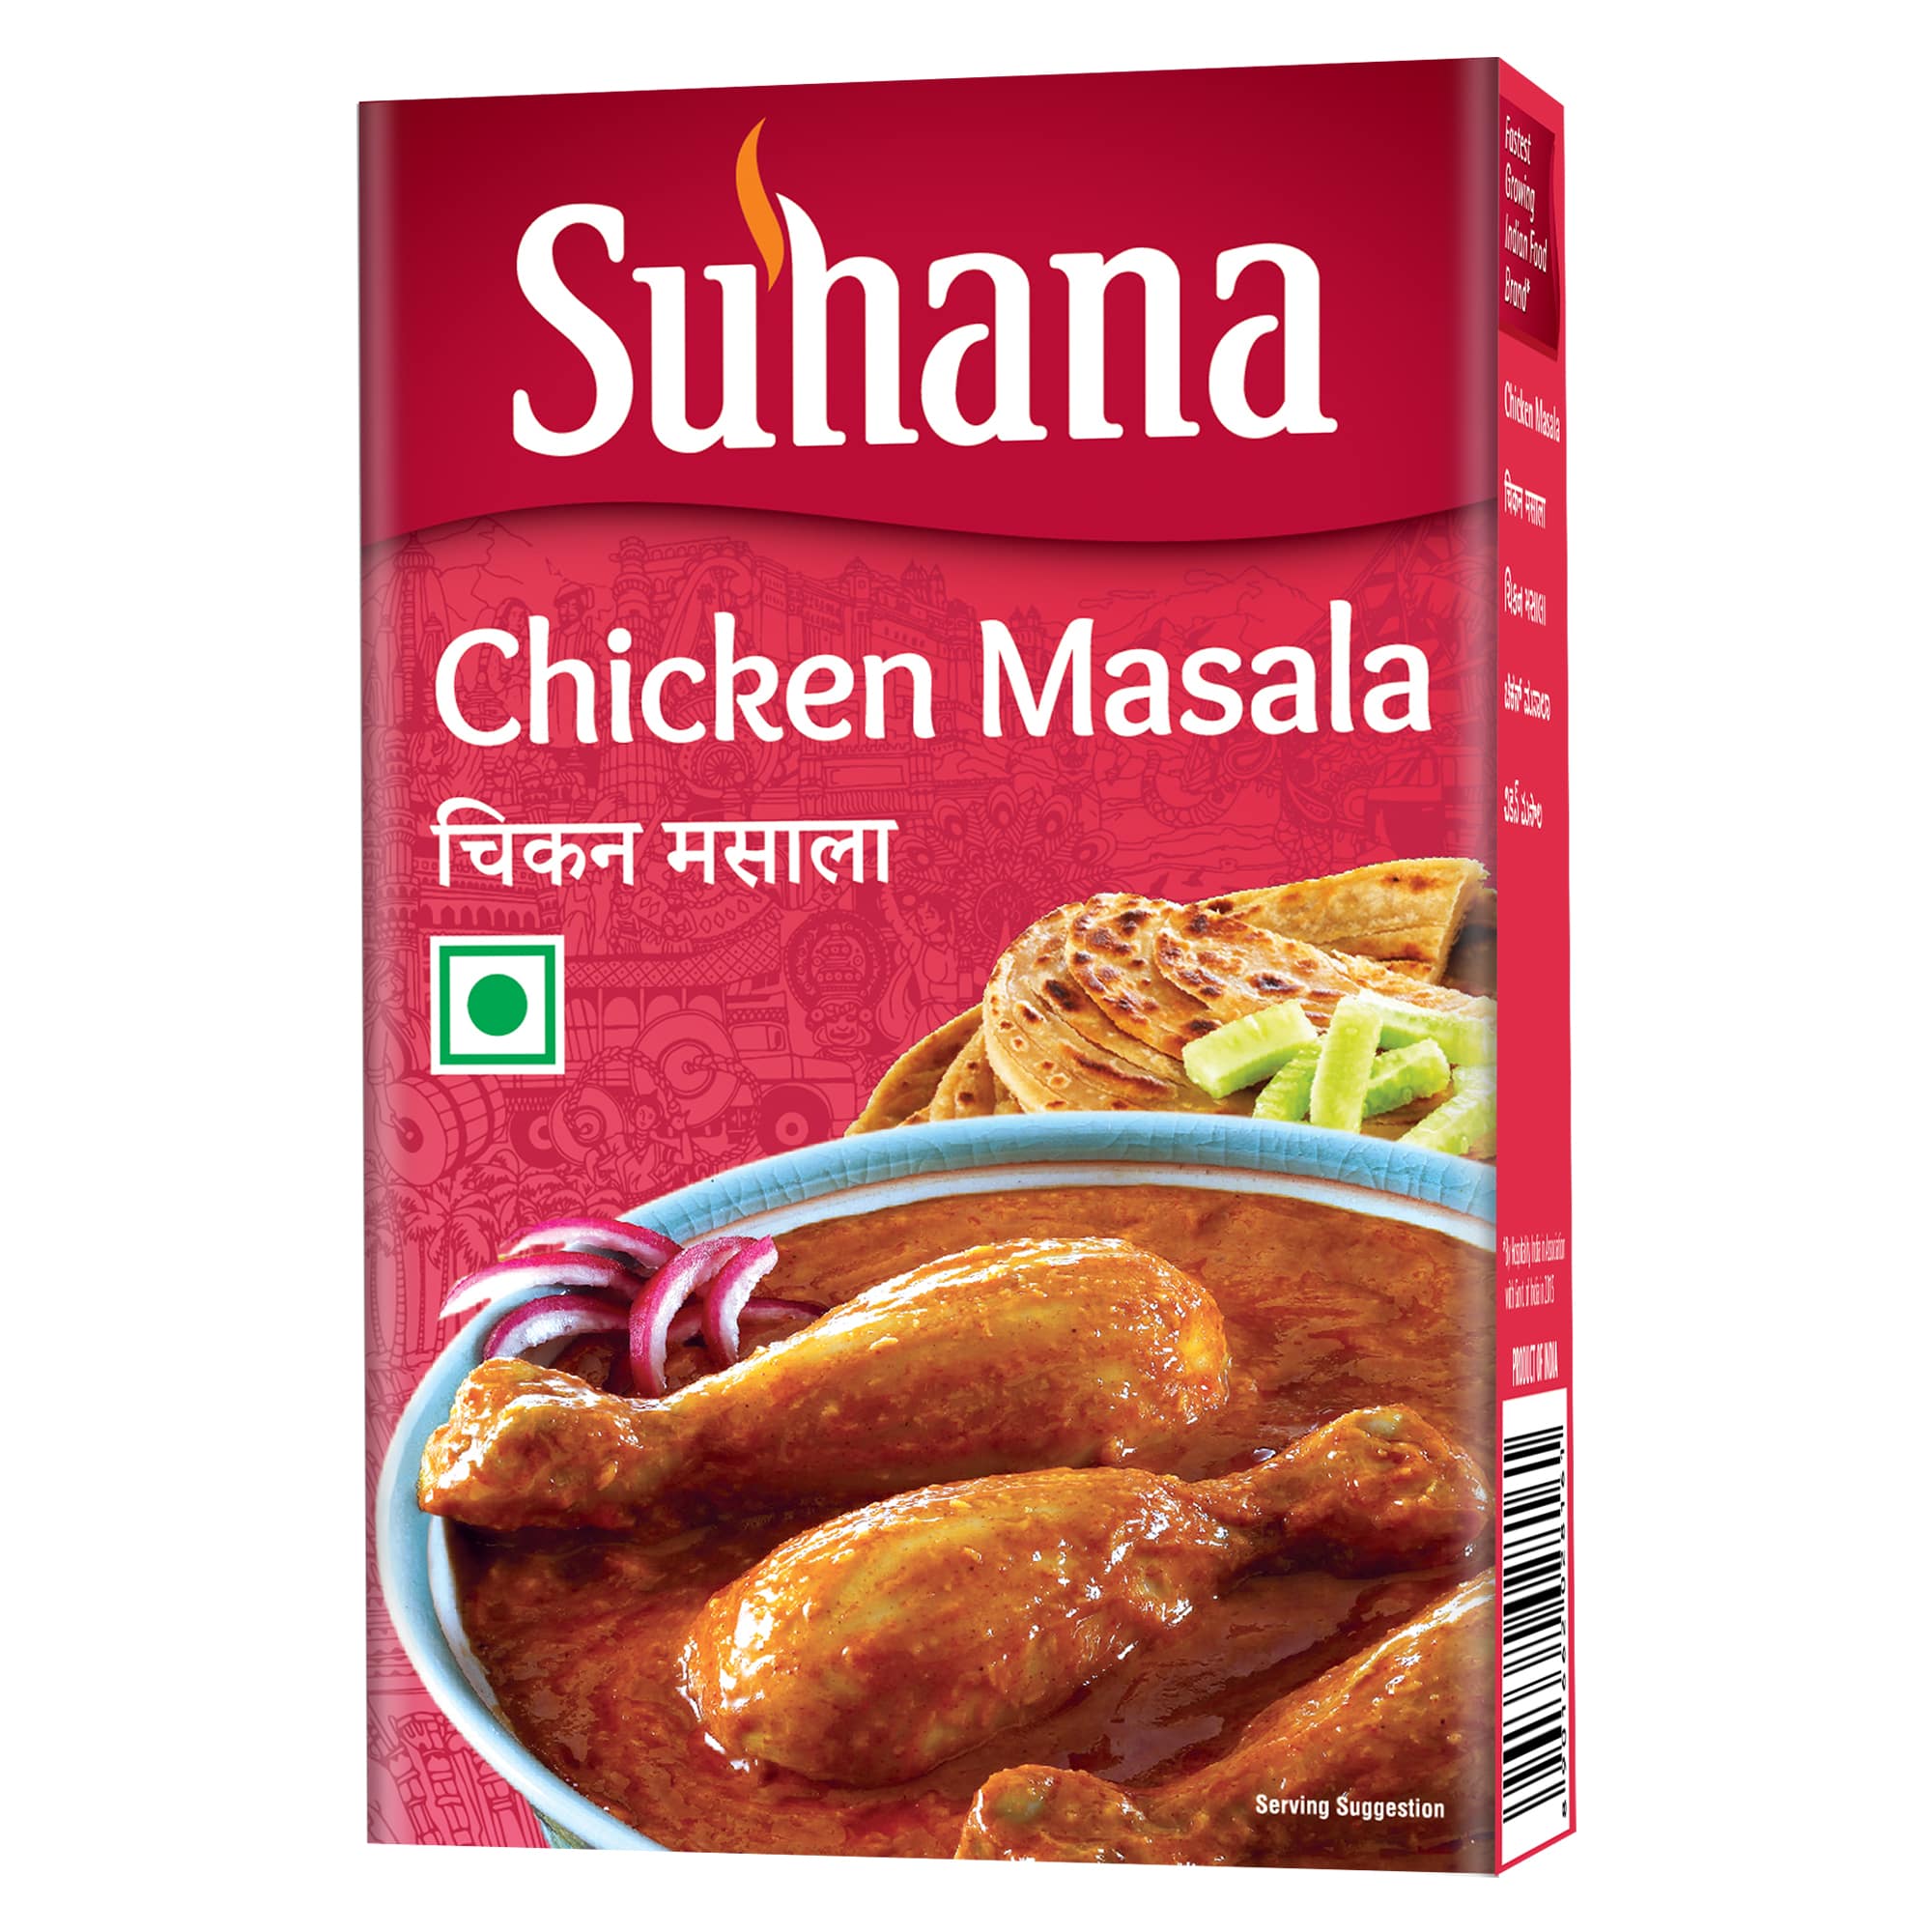 Suhana Chicken Masala Box